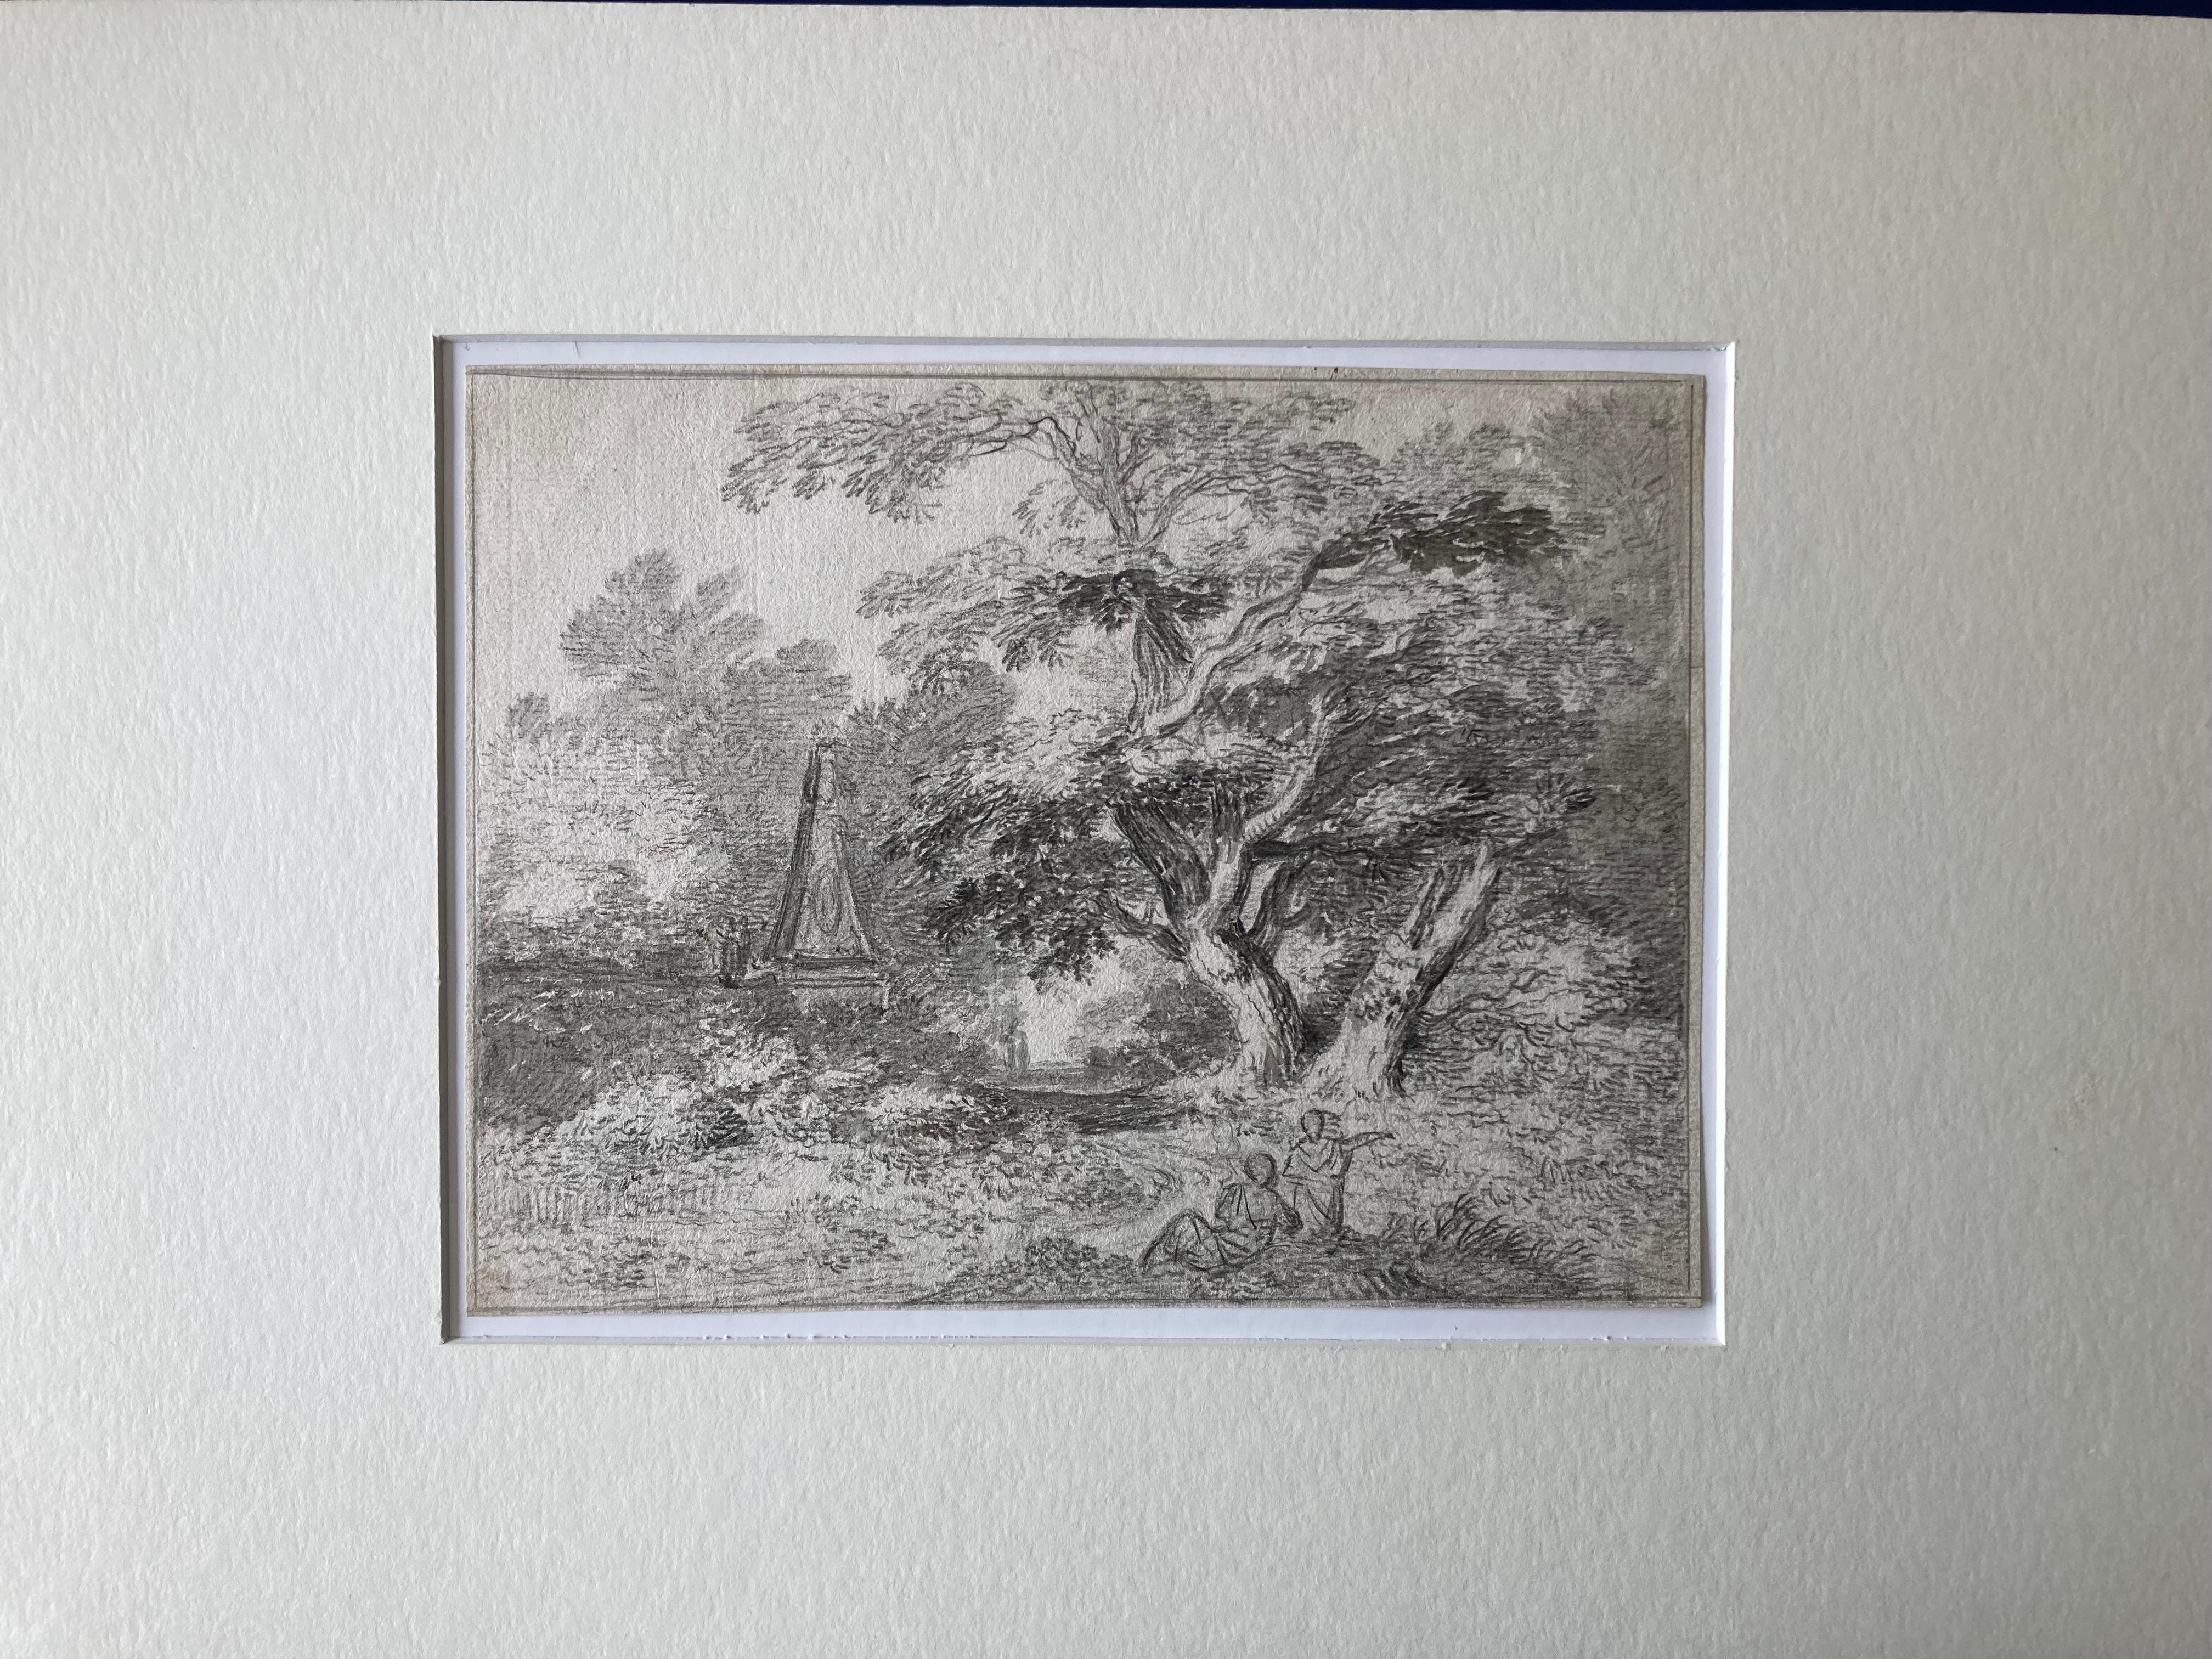 Scène de paysage, peut-être dans un parc, avec un grand arbre et un obélisque. Au premier plan, deux personnages sont représentés.
École anglaise
portant l'inscription 